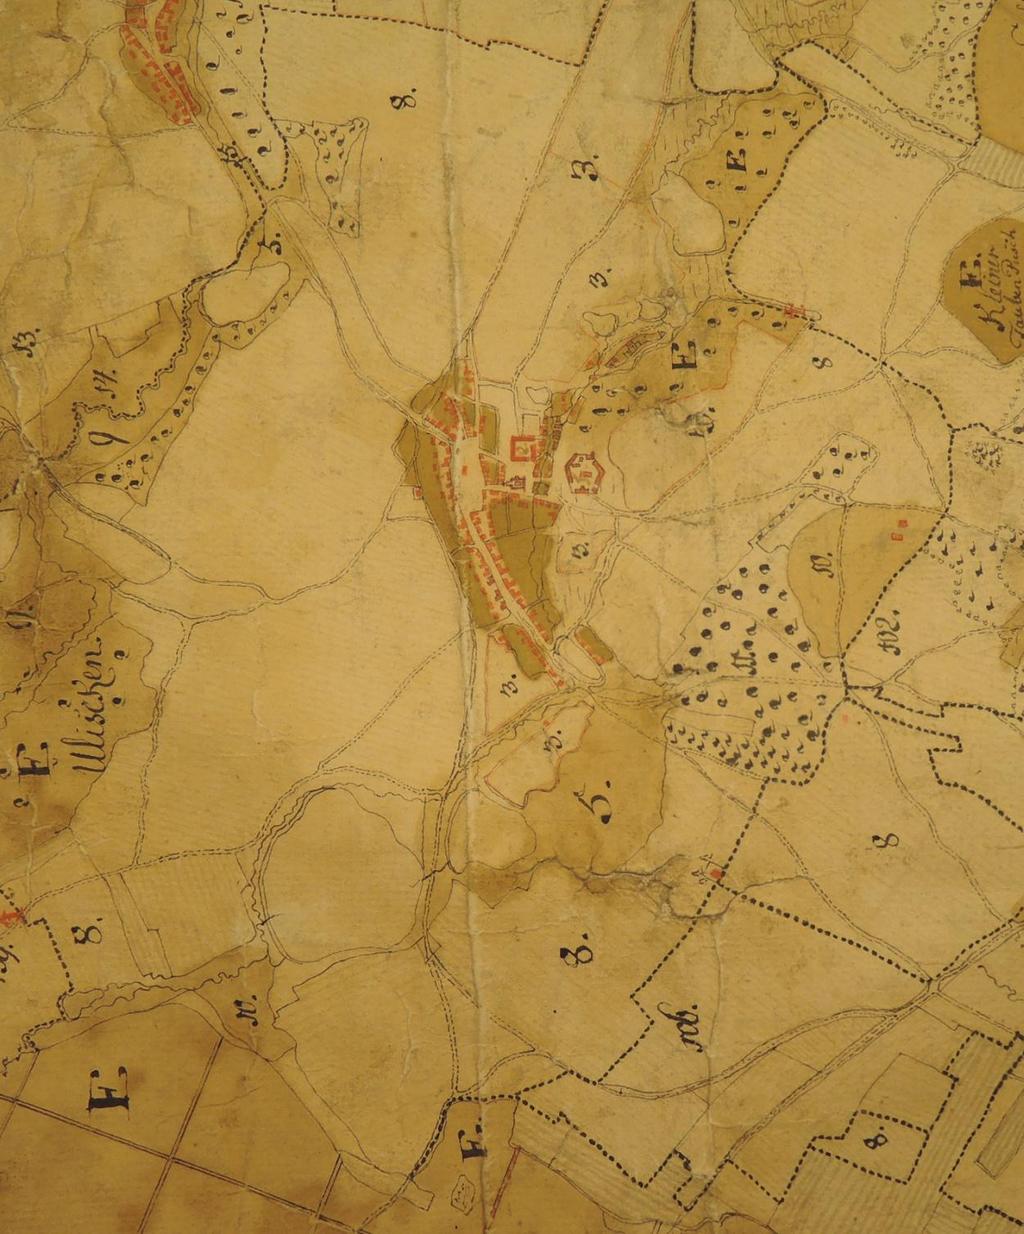 Obrázek 3 Vyobrazení Úsova na Přehledné mapě panství Úsov z roku 1774 438 438